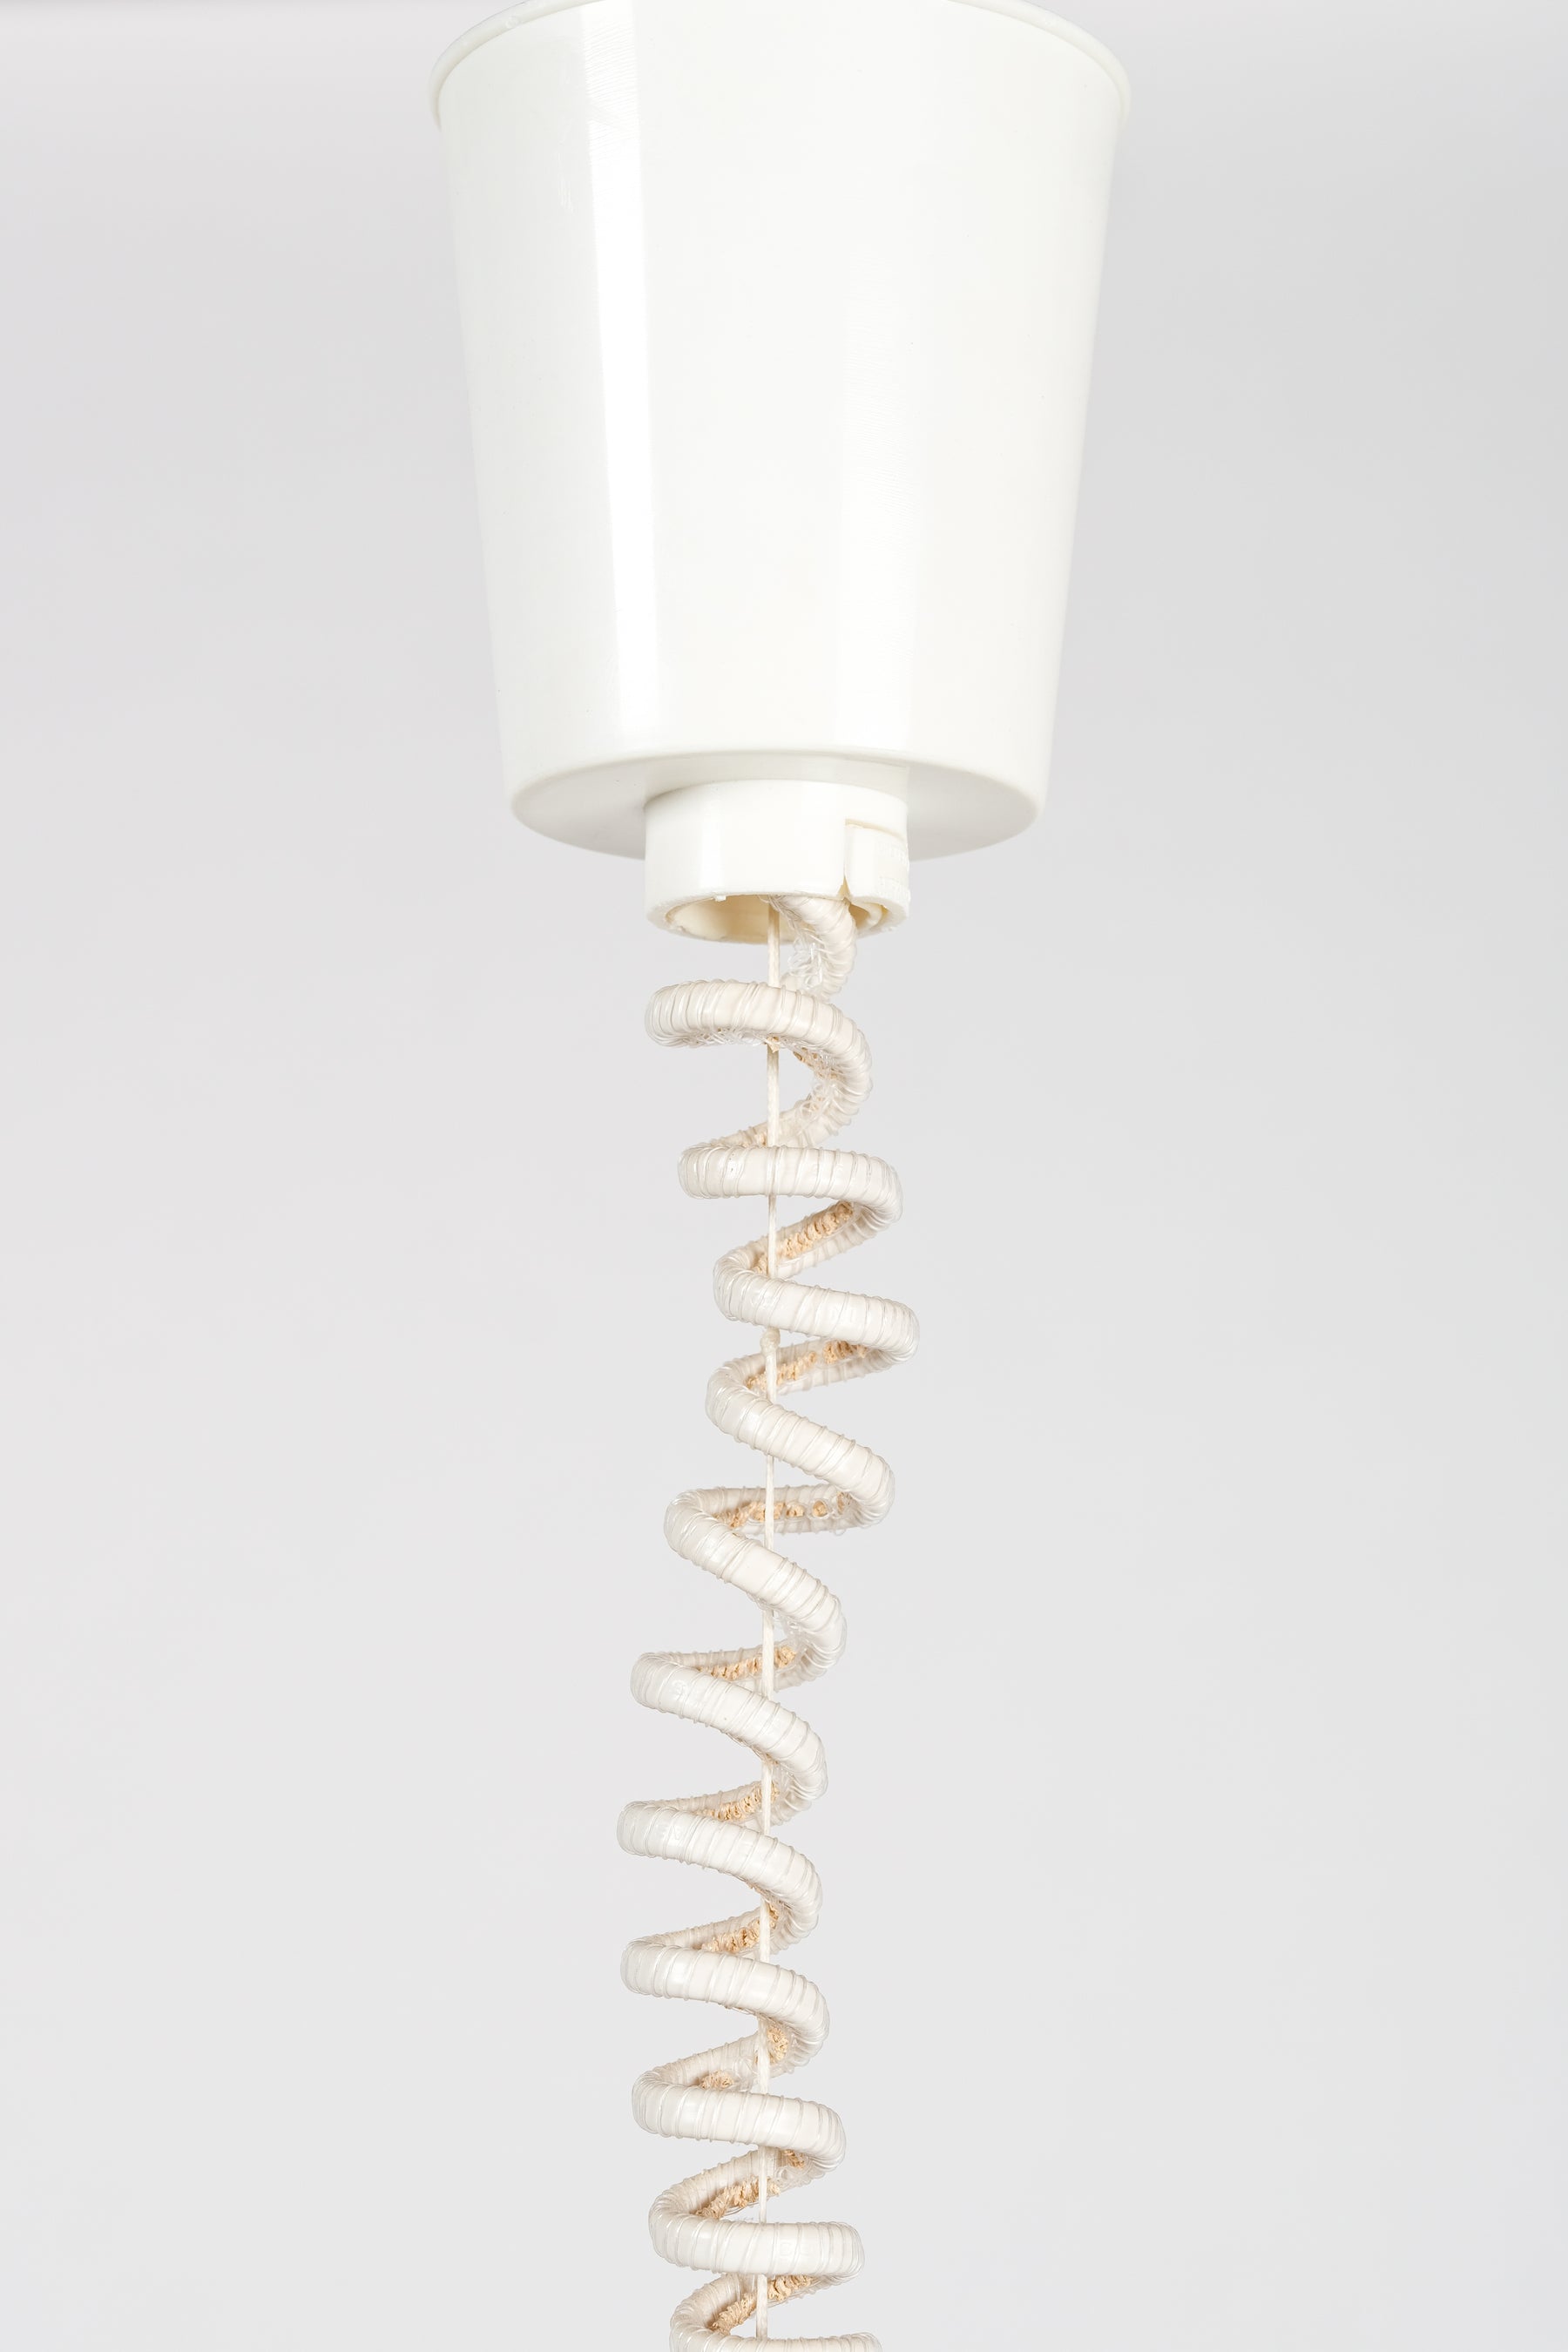 Deckenlampe, Modell n52503, Form Light, Dänemark, 80er